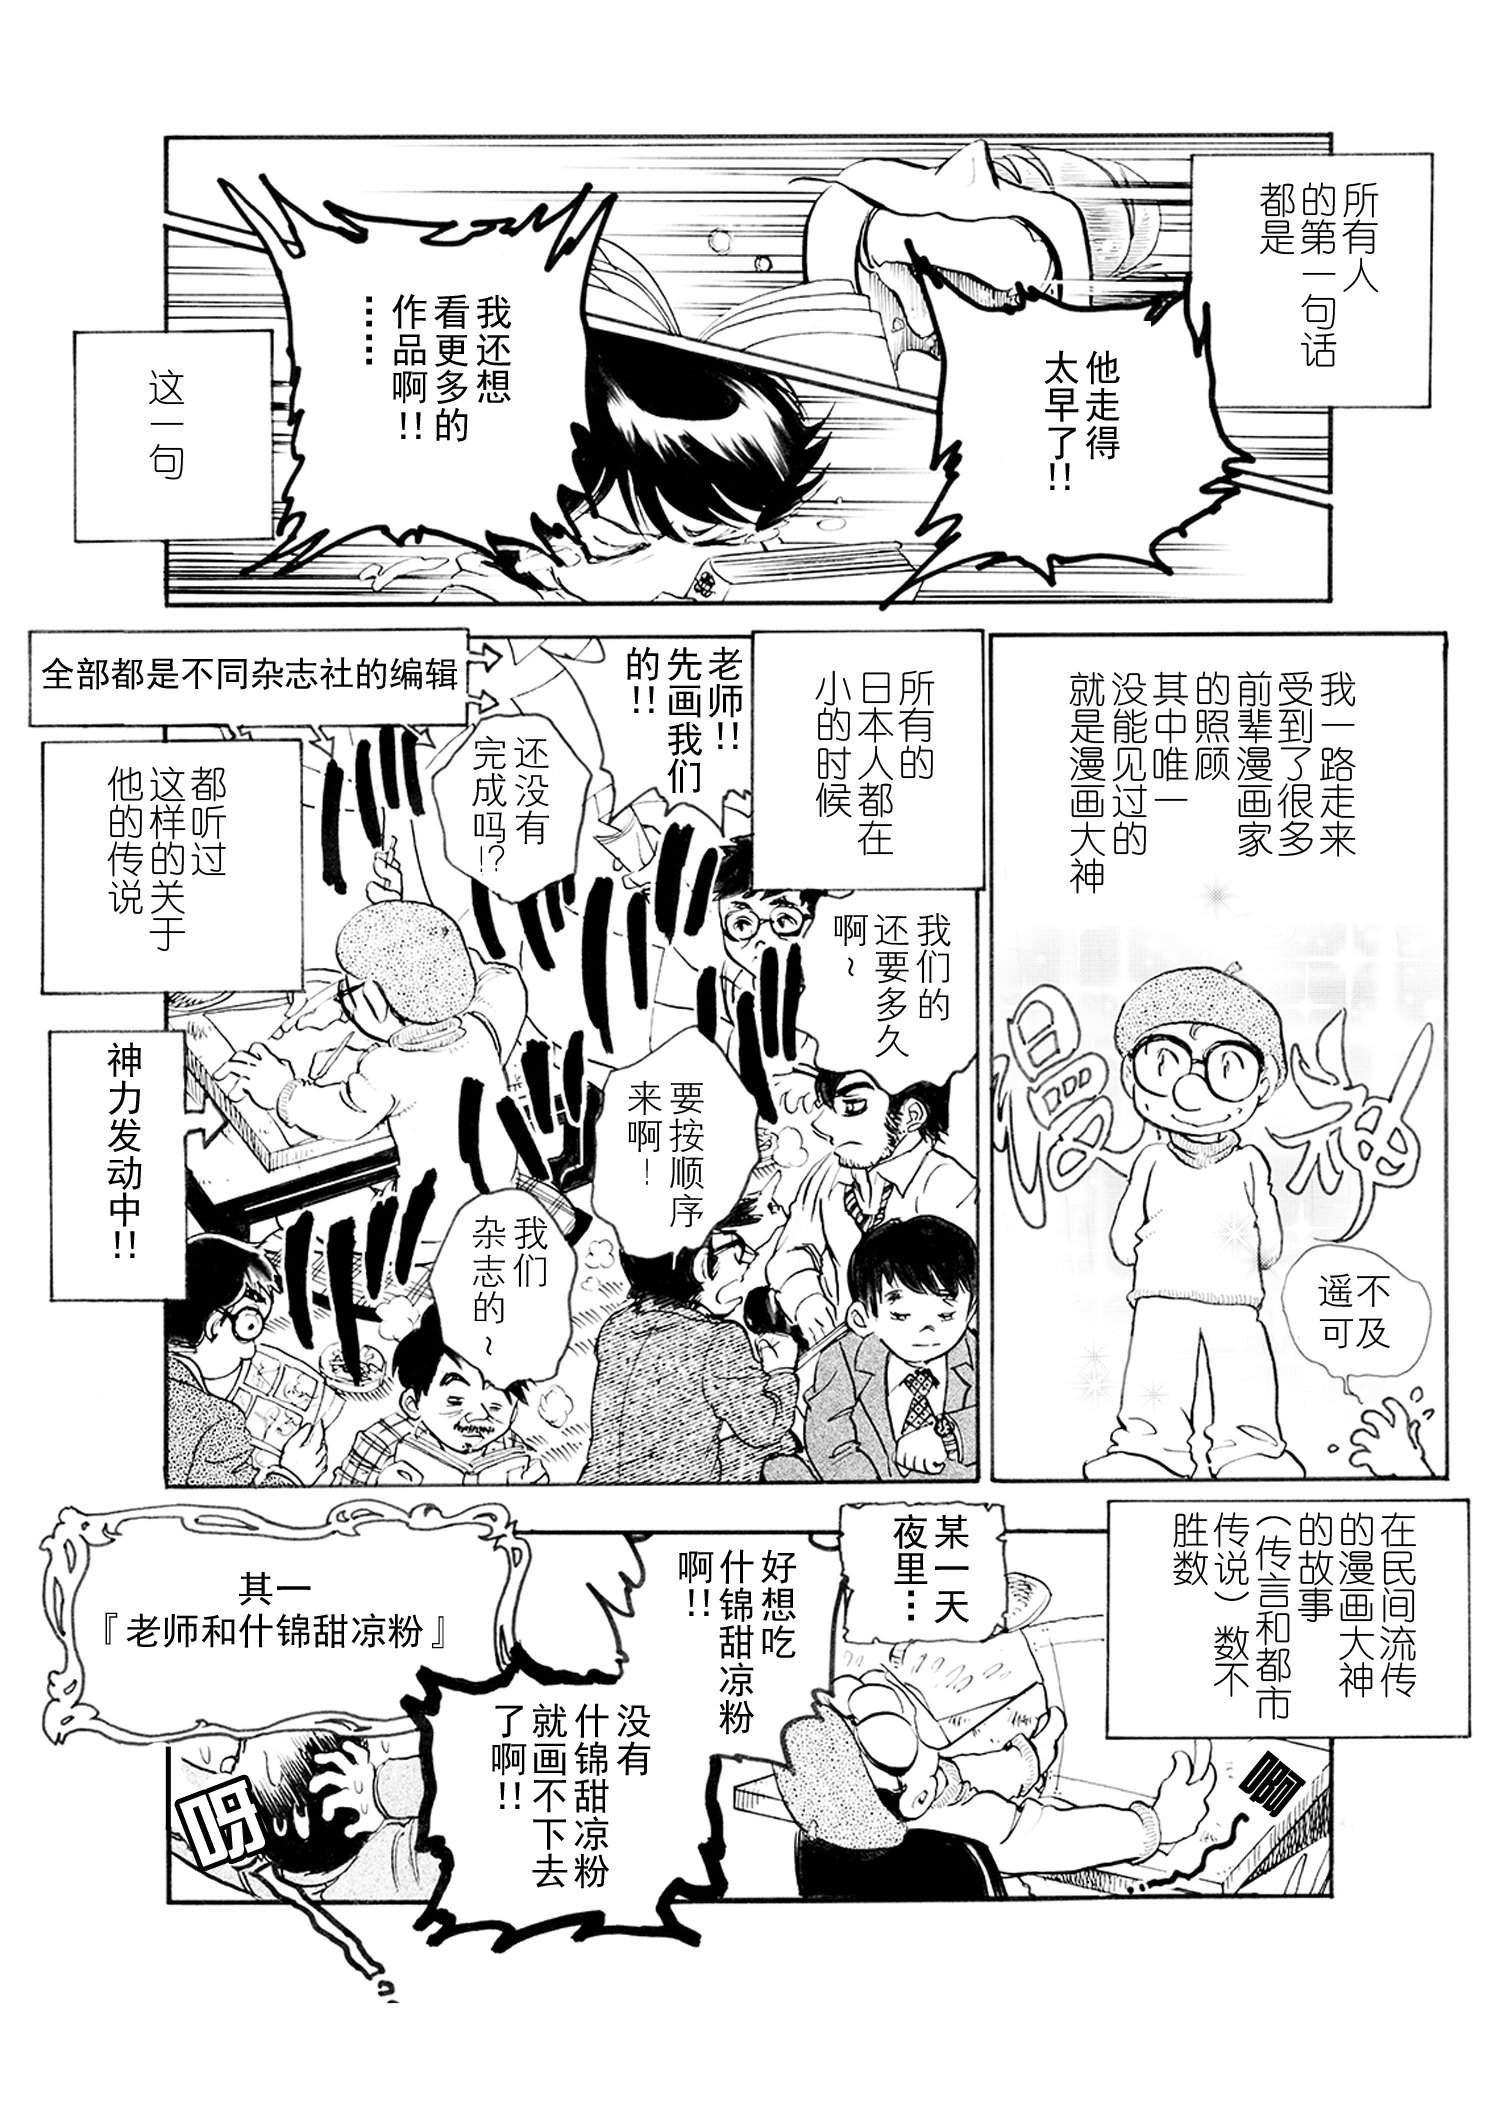 一本木蛮的漫画家日記 第3話 中国語版 一本木蛮 Note